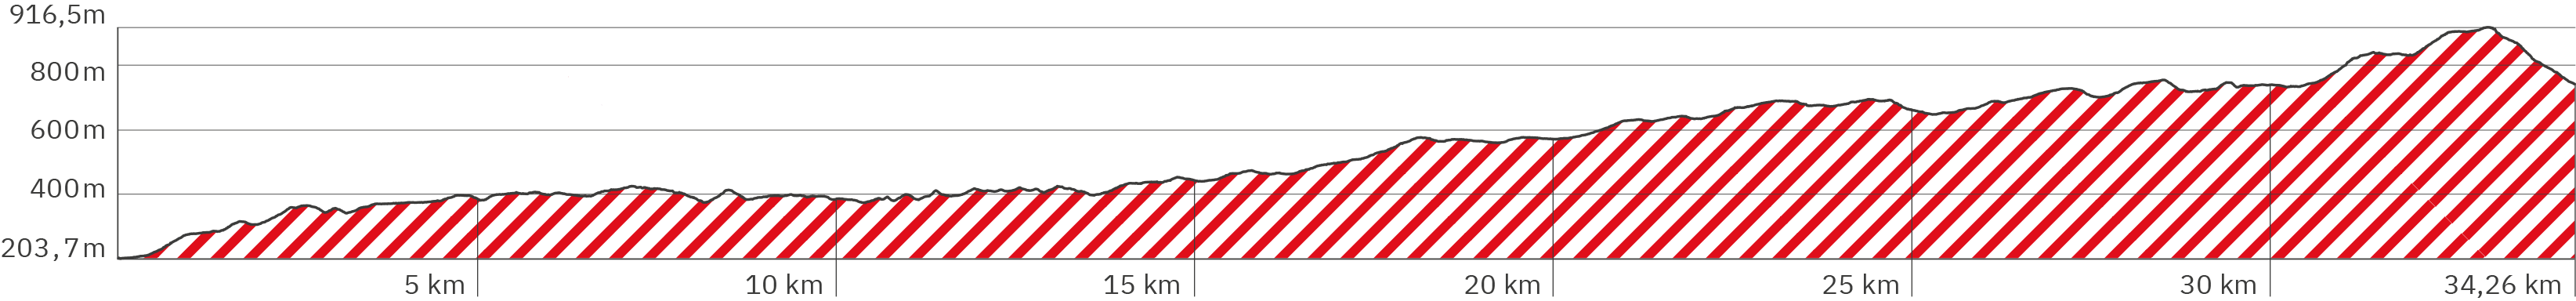 Höhenverlauf der 1. Rennsteig-Etappe – Länge ca. 34,26 km – Start auf ca. 203 Meter, nach leicht steilerem Beginn hoch auf 400 Meter bei km 6 flacher hoch auf 45 Meter bei km 17, danach 1 km wieder leicht steiler, dann langgezogen in leichten längeren Wellen hoch auf 750 meter bei km 30, schließlich steiler hoch auf 916 Meter bei km 32 (eigentliches Etappen-Ende auf dem Großen Inselsberg) und dann 2 steilere Abschlusskilometer runter auf 750 Meter am Etappen-Ende (bei Übernachtung am Fuße des Berges) – Farbe der Schraffur ist Rot analog zum angezeigten Wegverlauf in der obigen Google Map